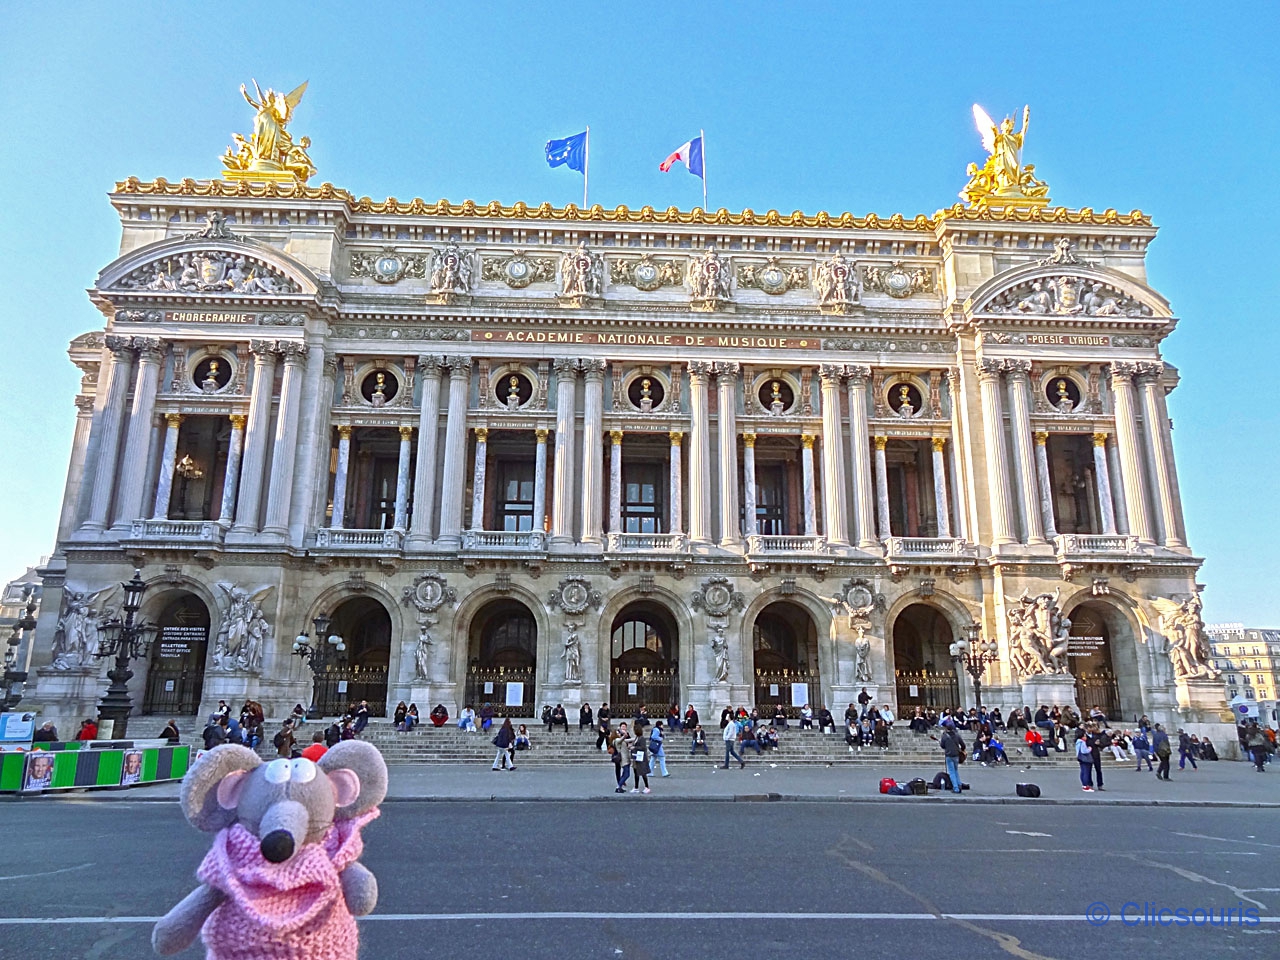 Visiter l'Opéra Garnier à Paris : photos, prix des billets, horaires, conseils et avis